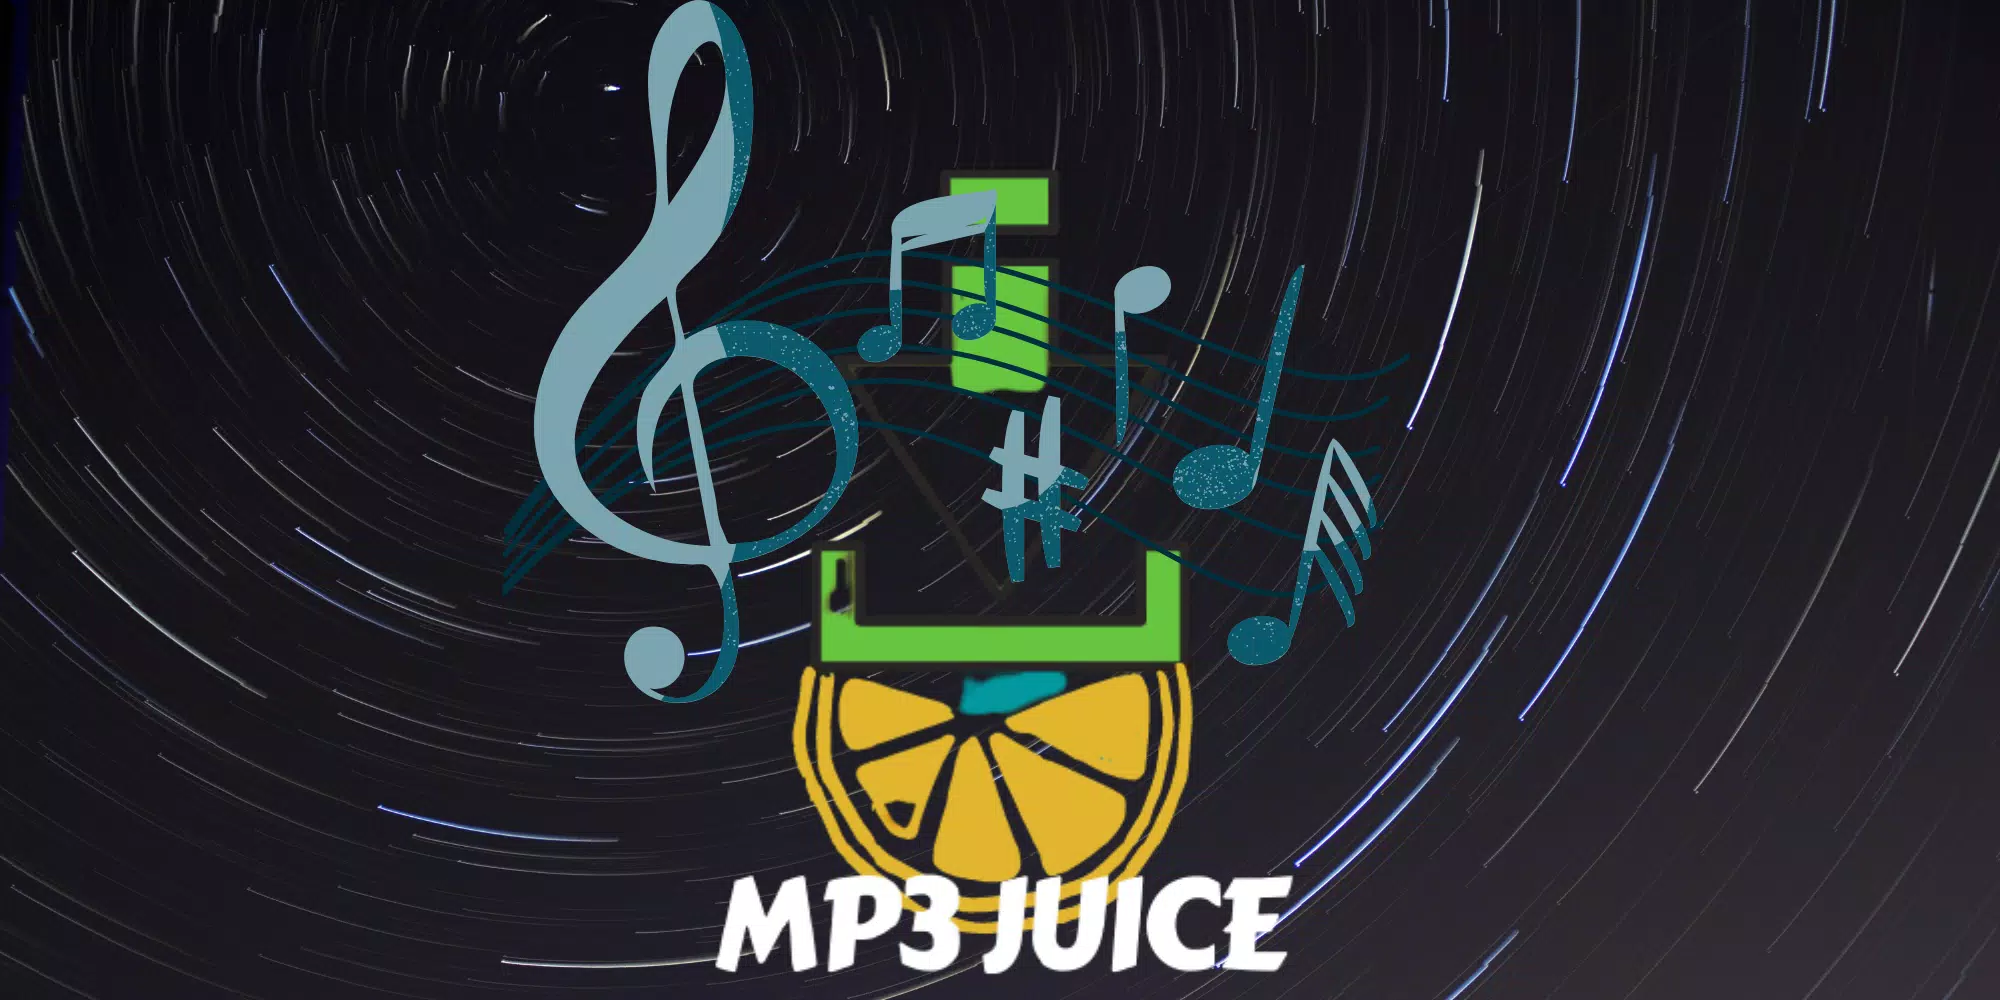 Juicy - Mp3 Juice APK pour Android Télécharger